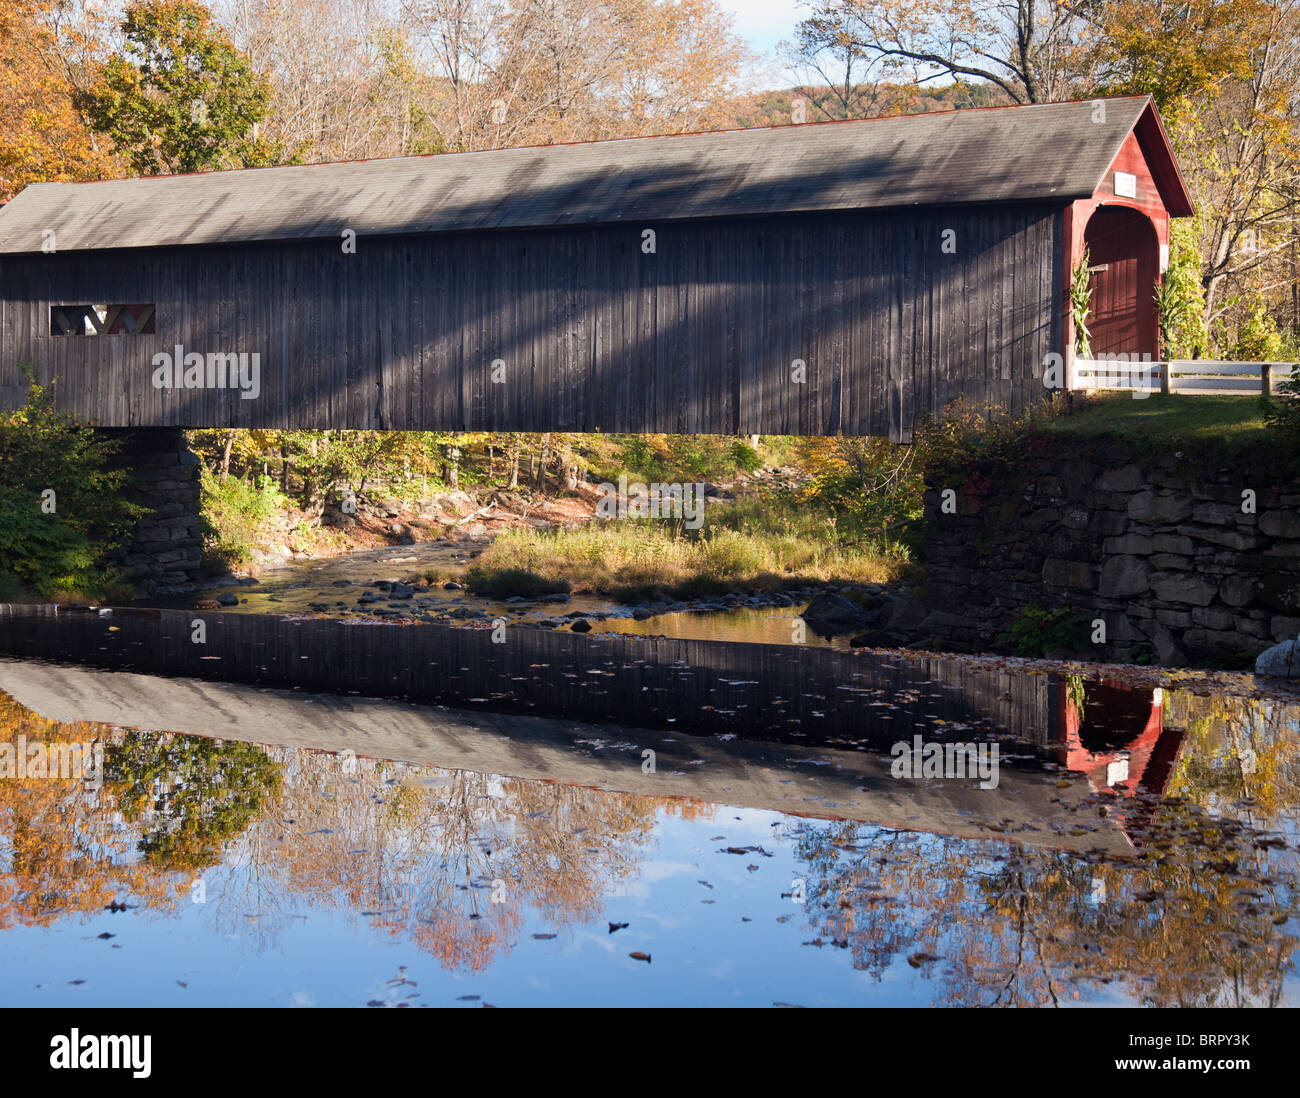 Pont couvert de la rivière vert dans le Vermont, New England, USA en automne / fall Banque D'Images